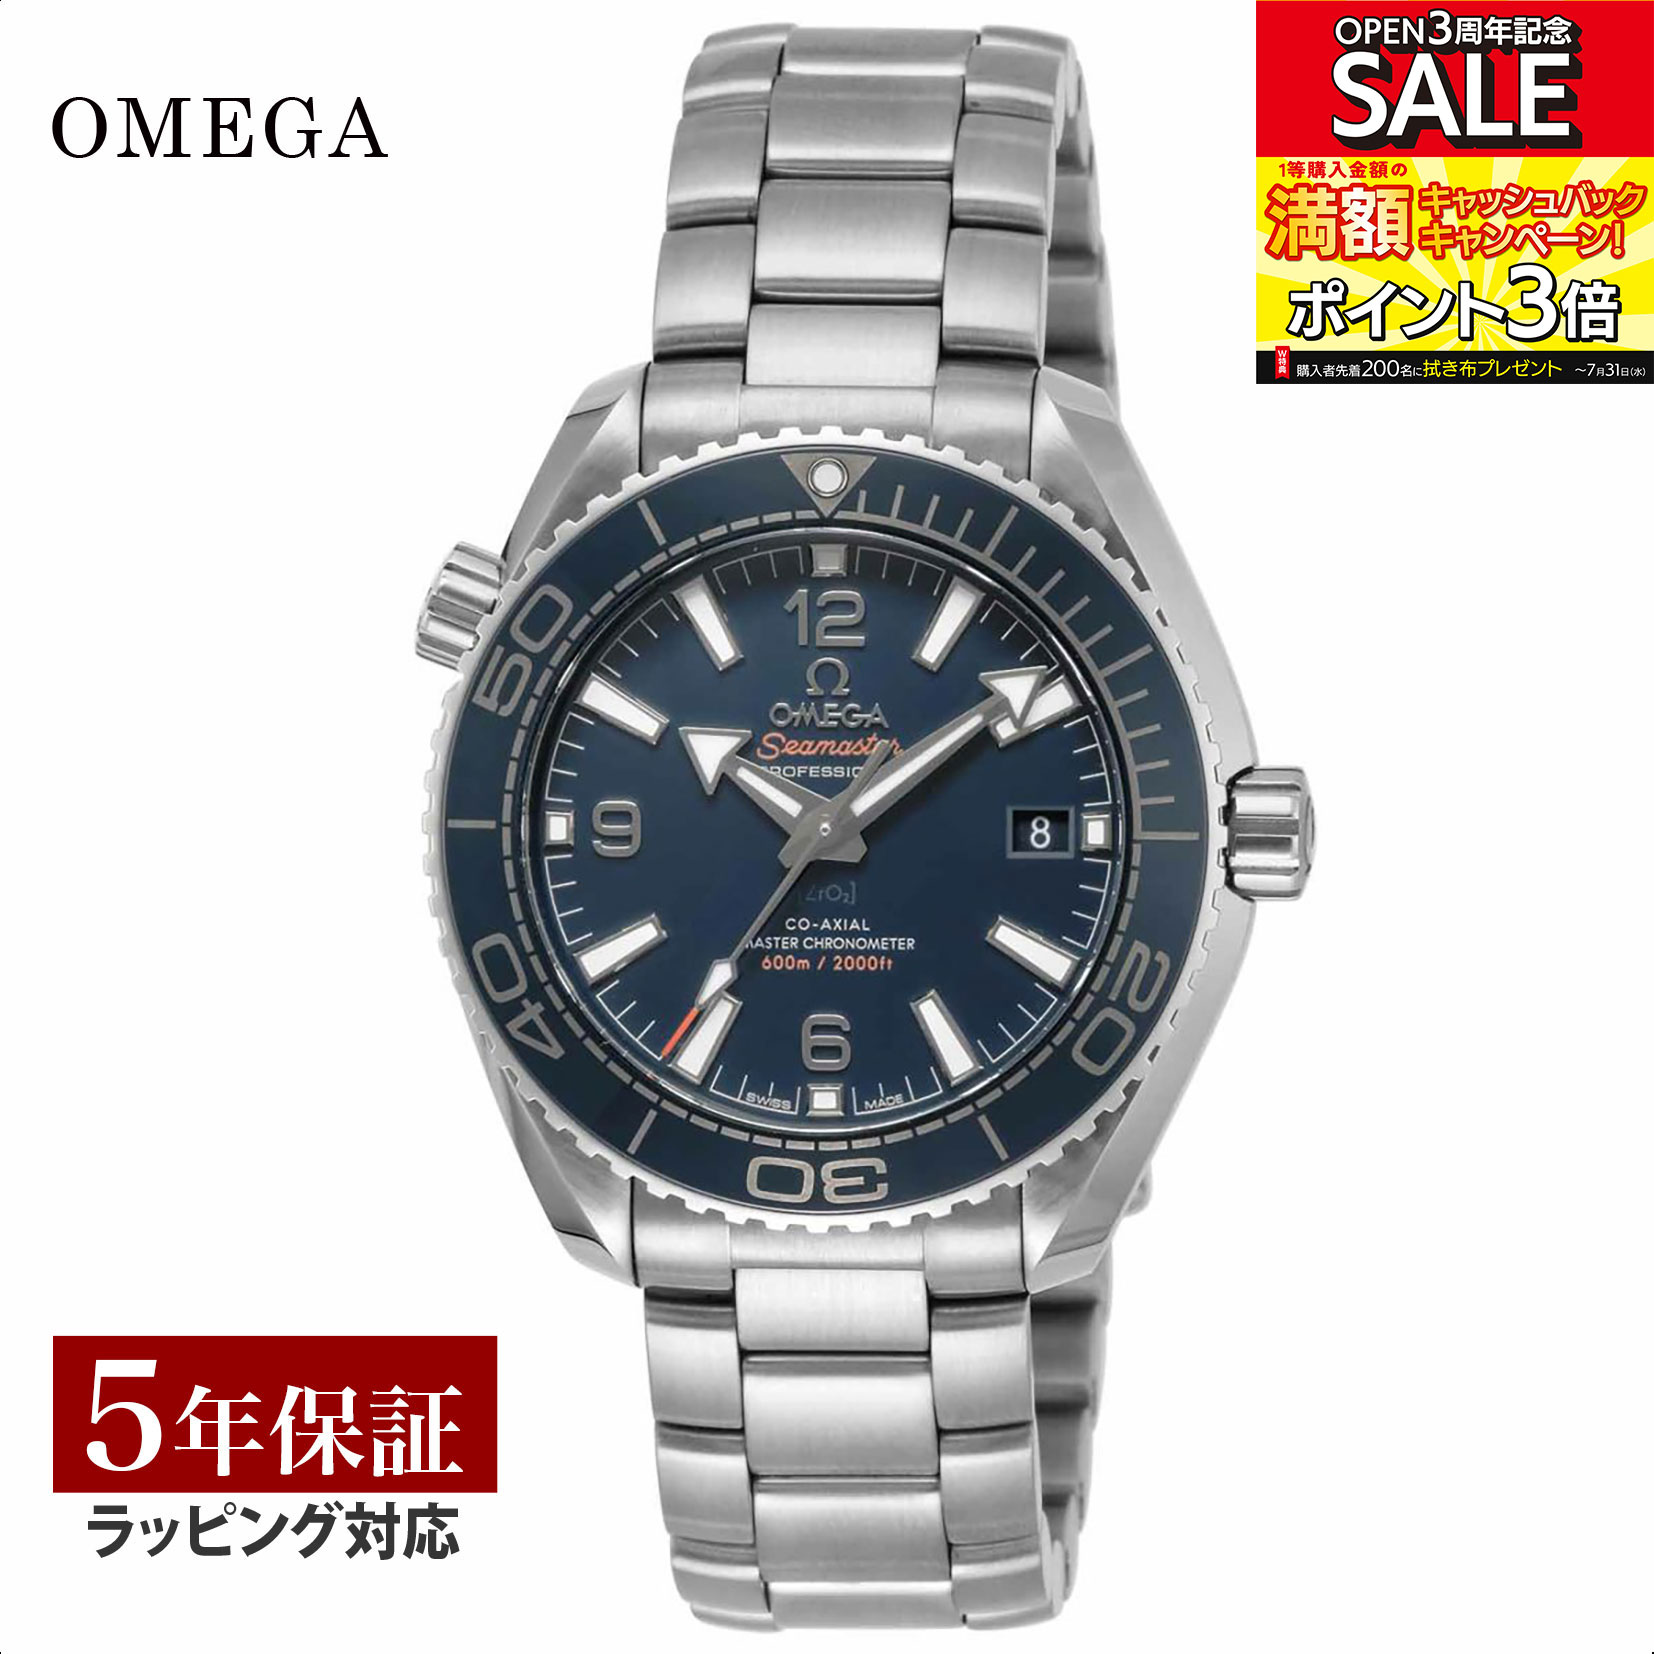 シーマスター OMEGA オメガ シーマスター プラネットオーシャン コーアクシャル自動巻 メンズ ブルー 215.30.40.20.03.001 時計 腕時計 高級腕時計 ブランド